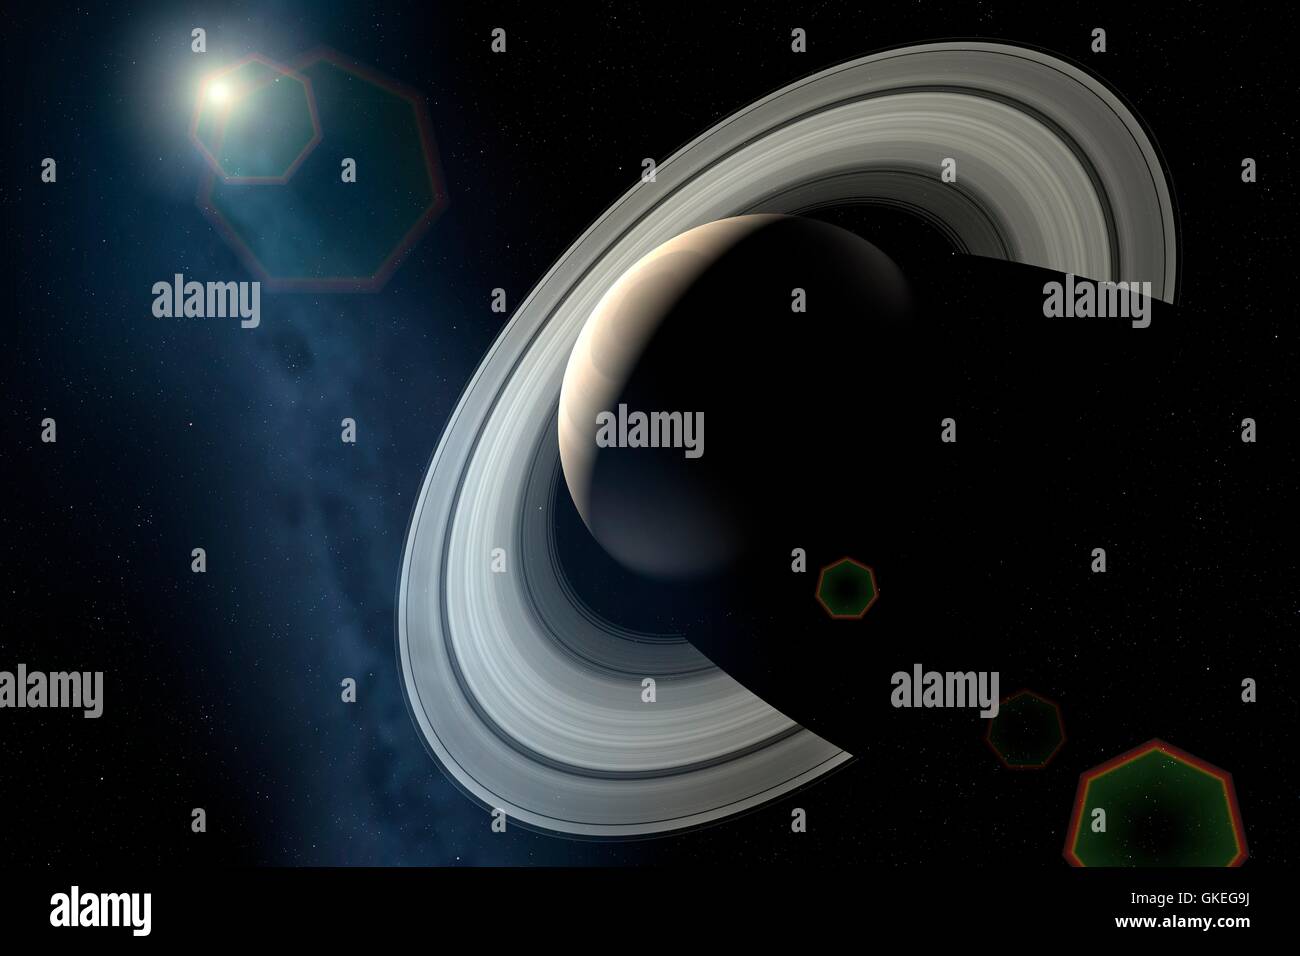 Une impression de le croissant de Saturne, avec le soleil à l'horizon. Le côté nocturne de la planète est partiellement éclairée par la lumière du soleil réfléchie par les anneaux lumineux -- un effet connu comme ringshine. Banque D'Images